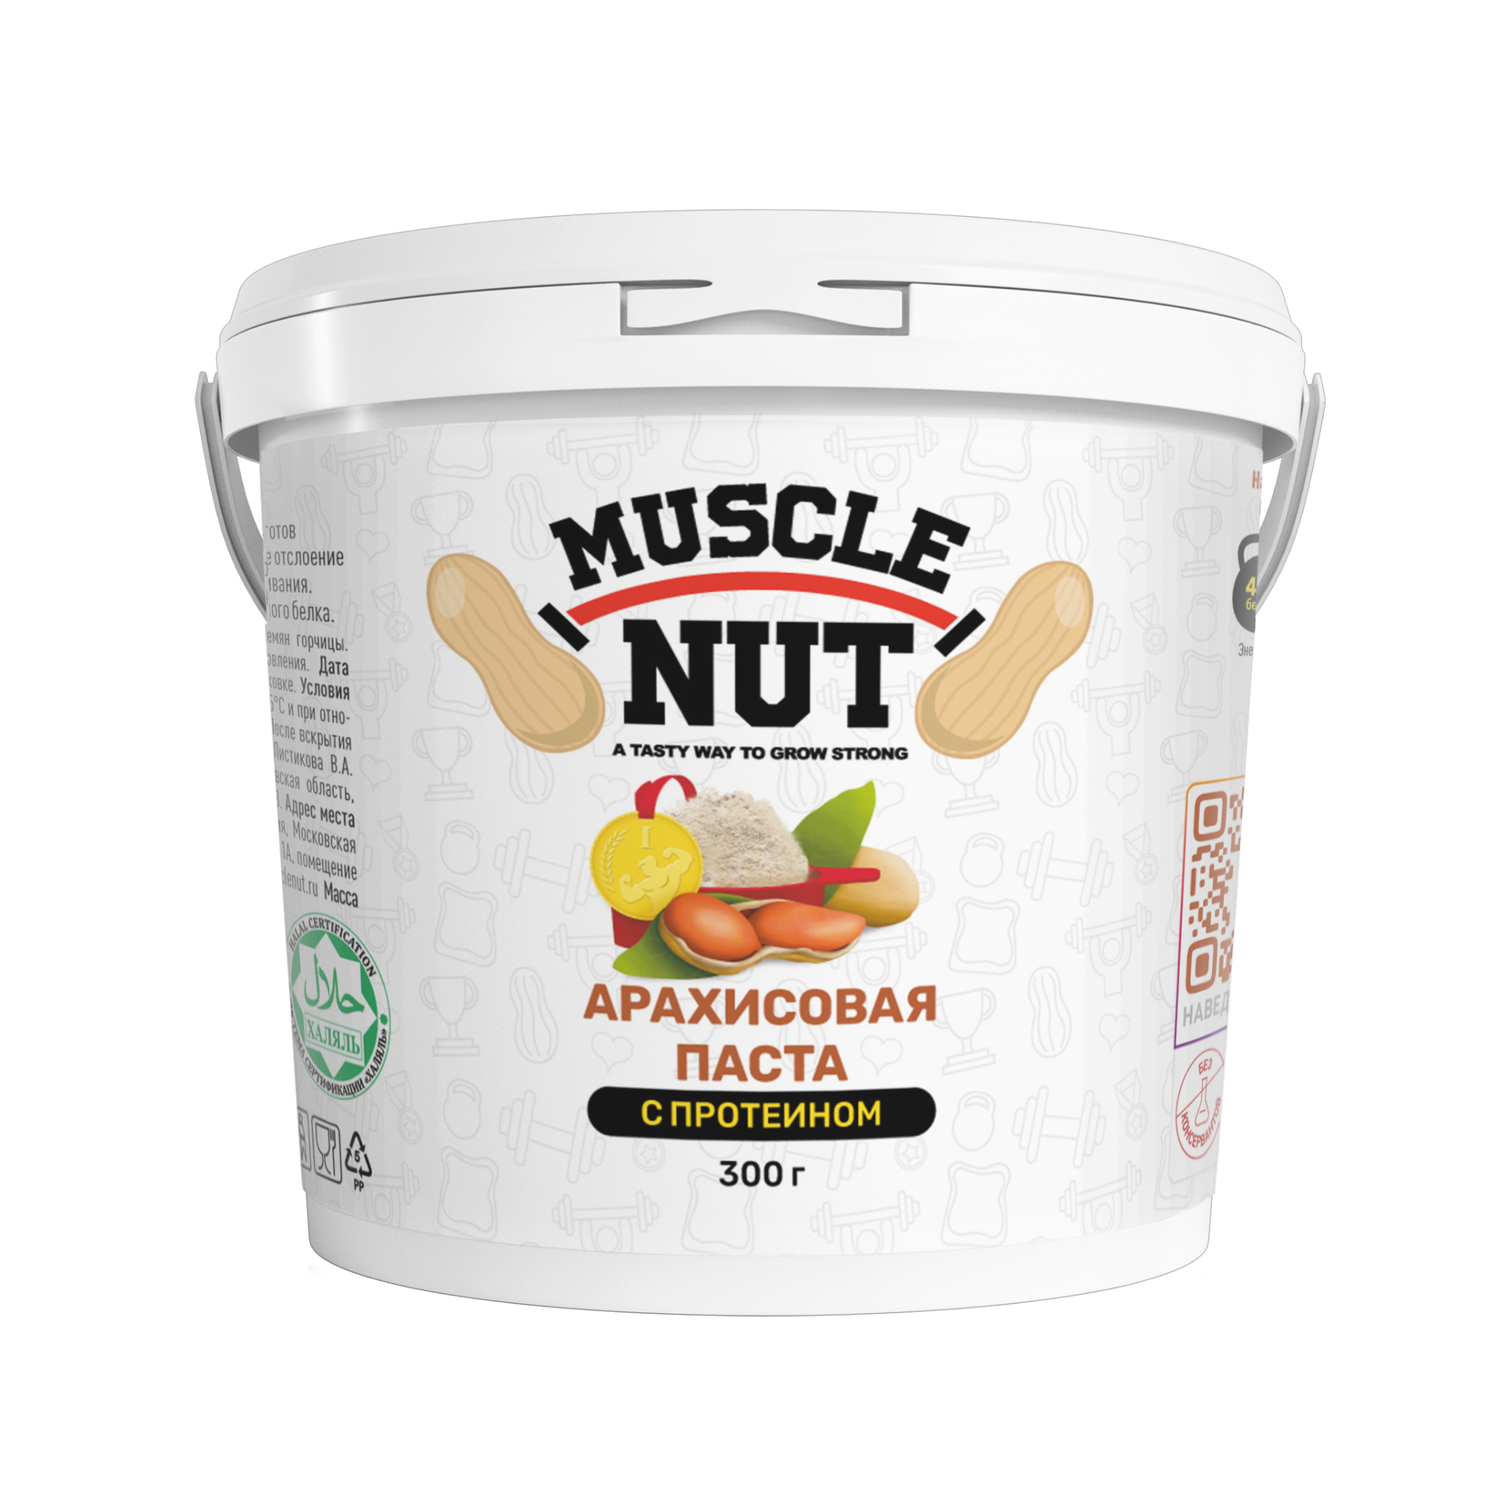 Арахисовая паста Muscle Nut с протеином без сахара натуральная высокобелковая 300 г - фото 1